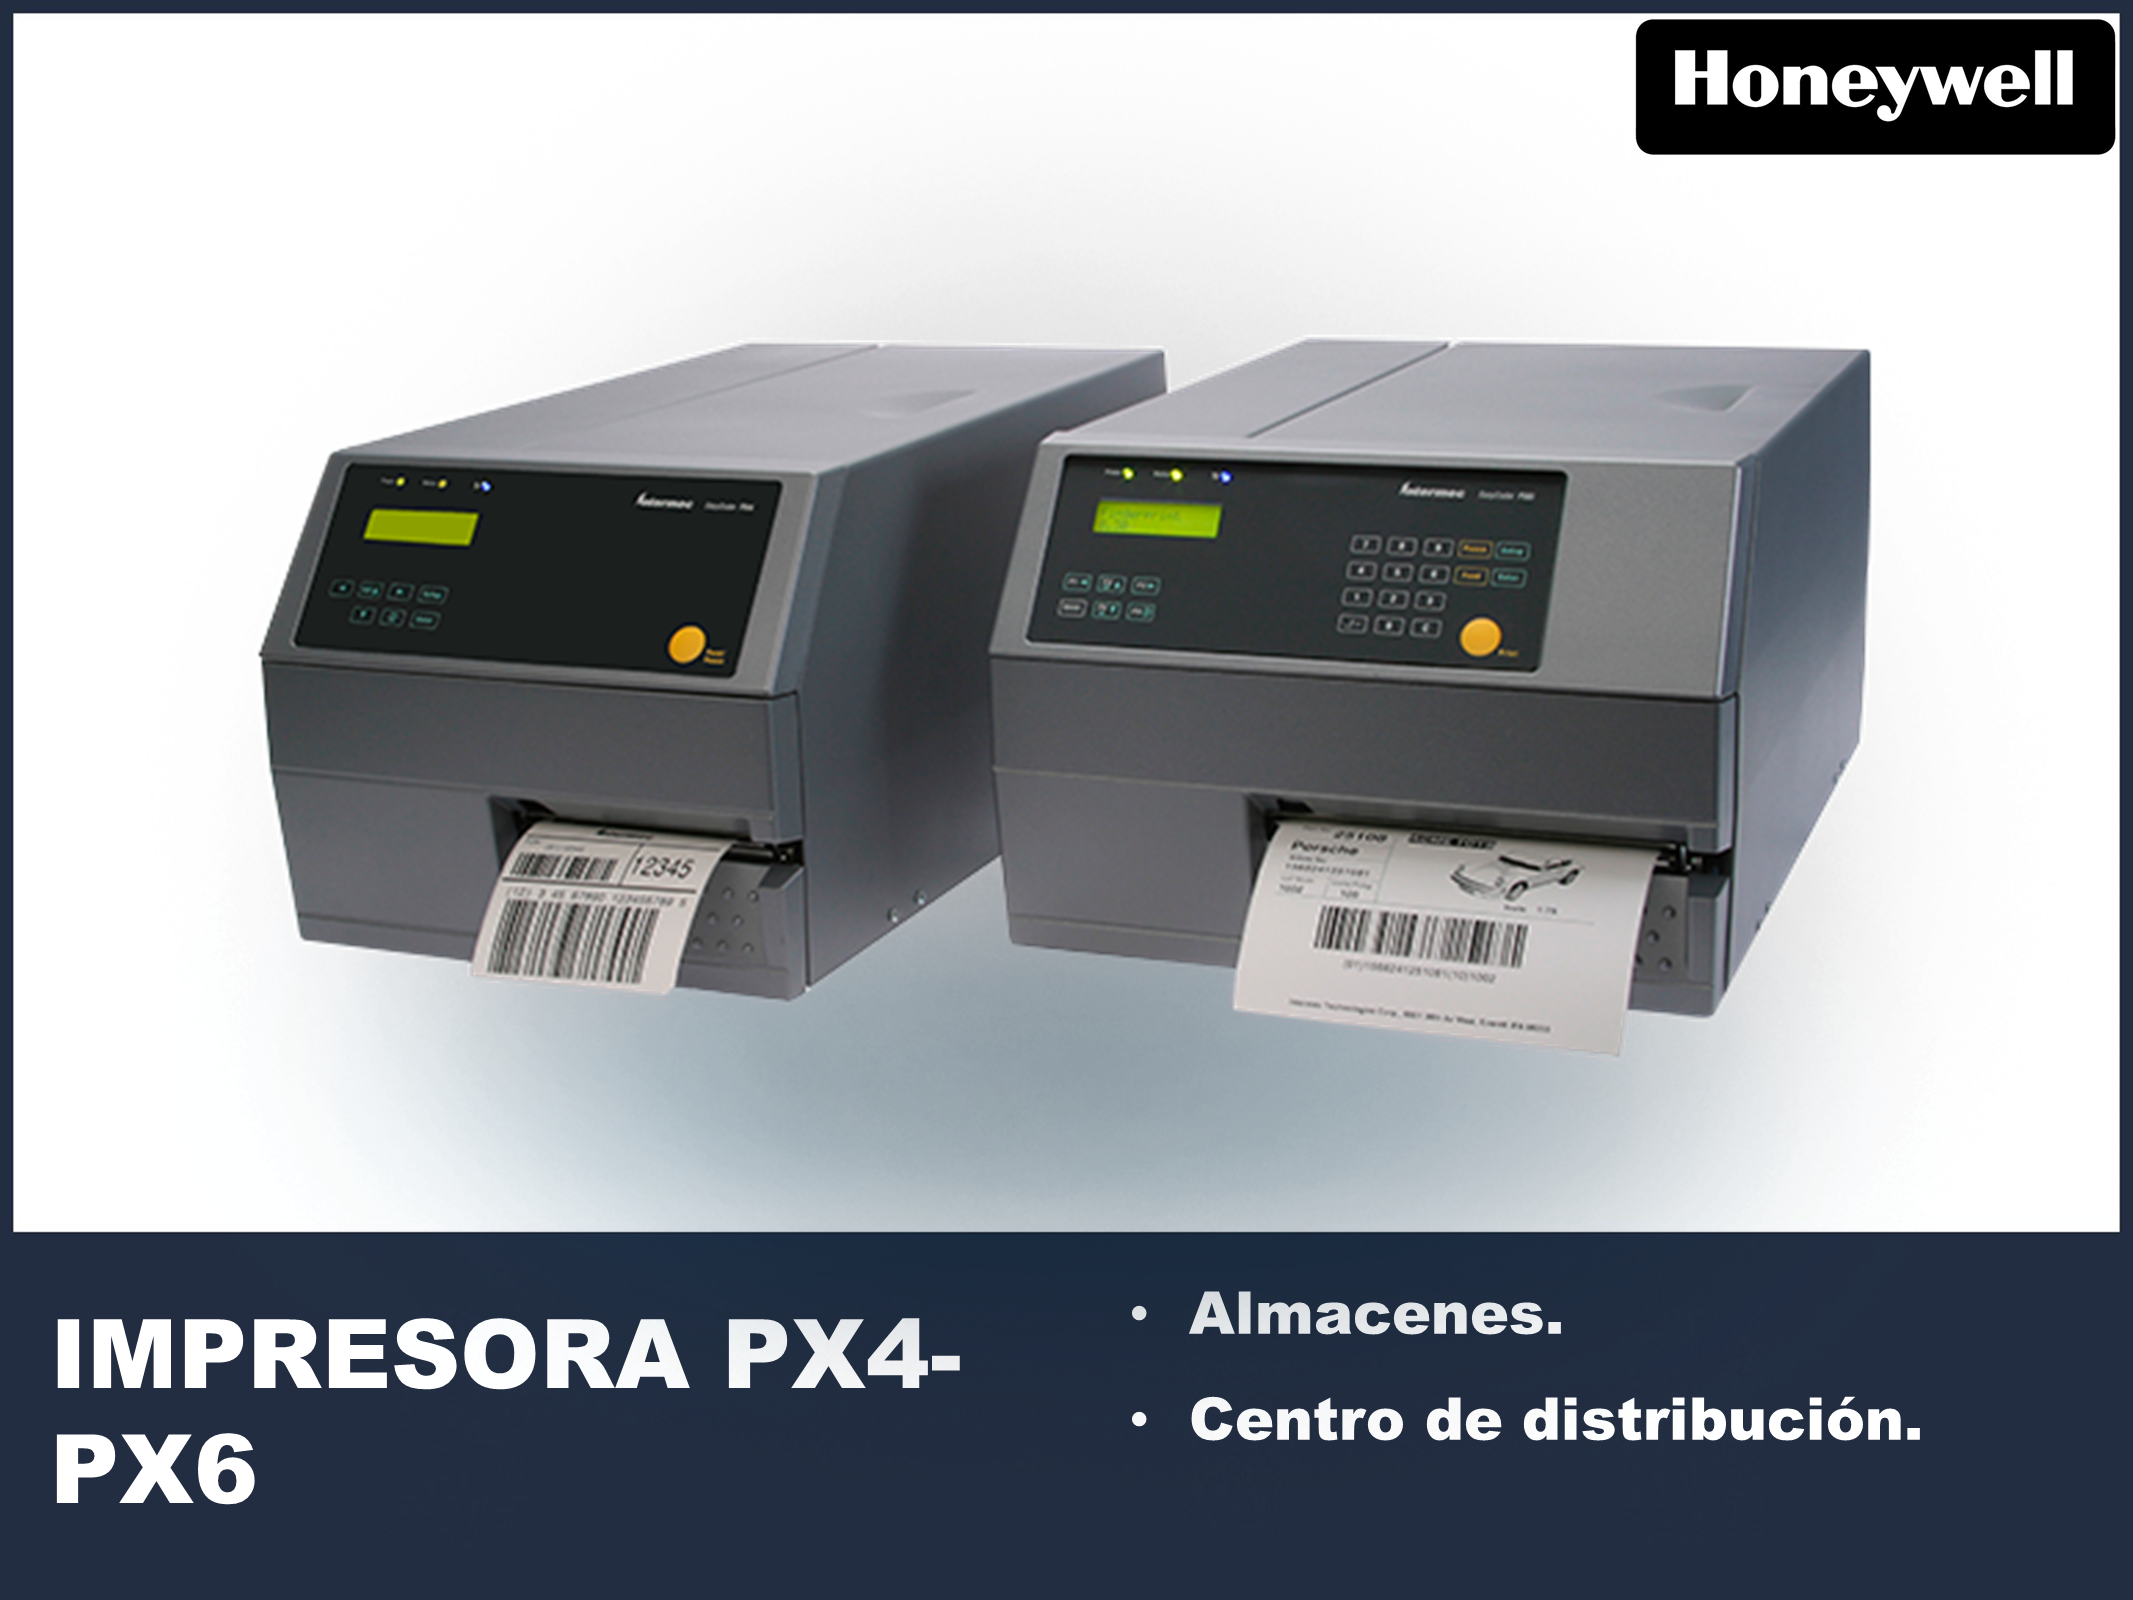 Impresora industrial PX4-PX6